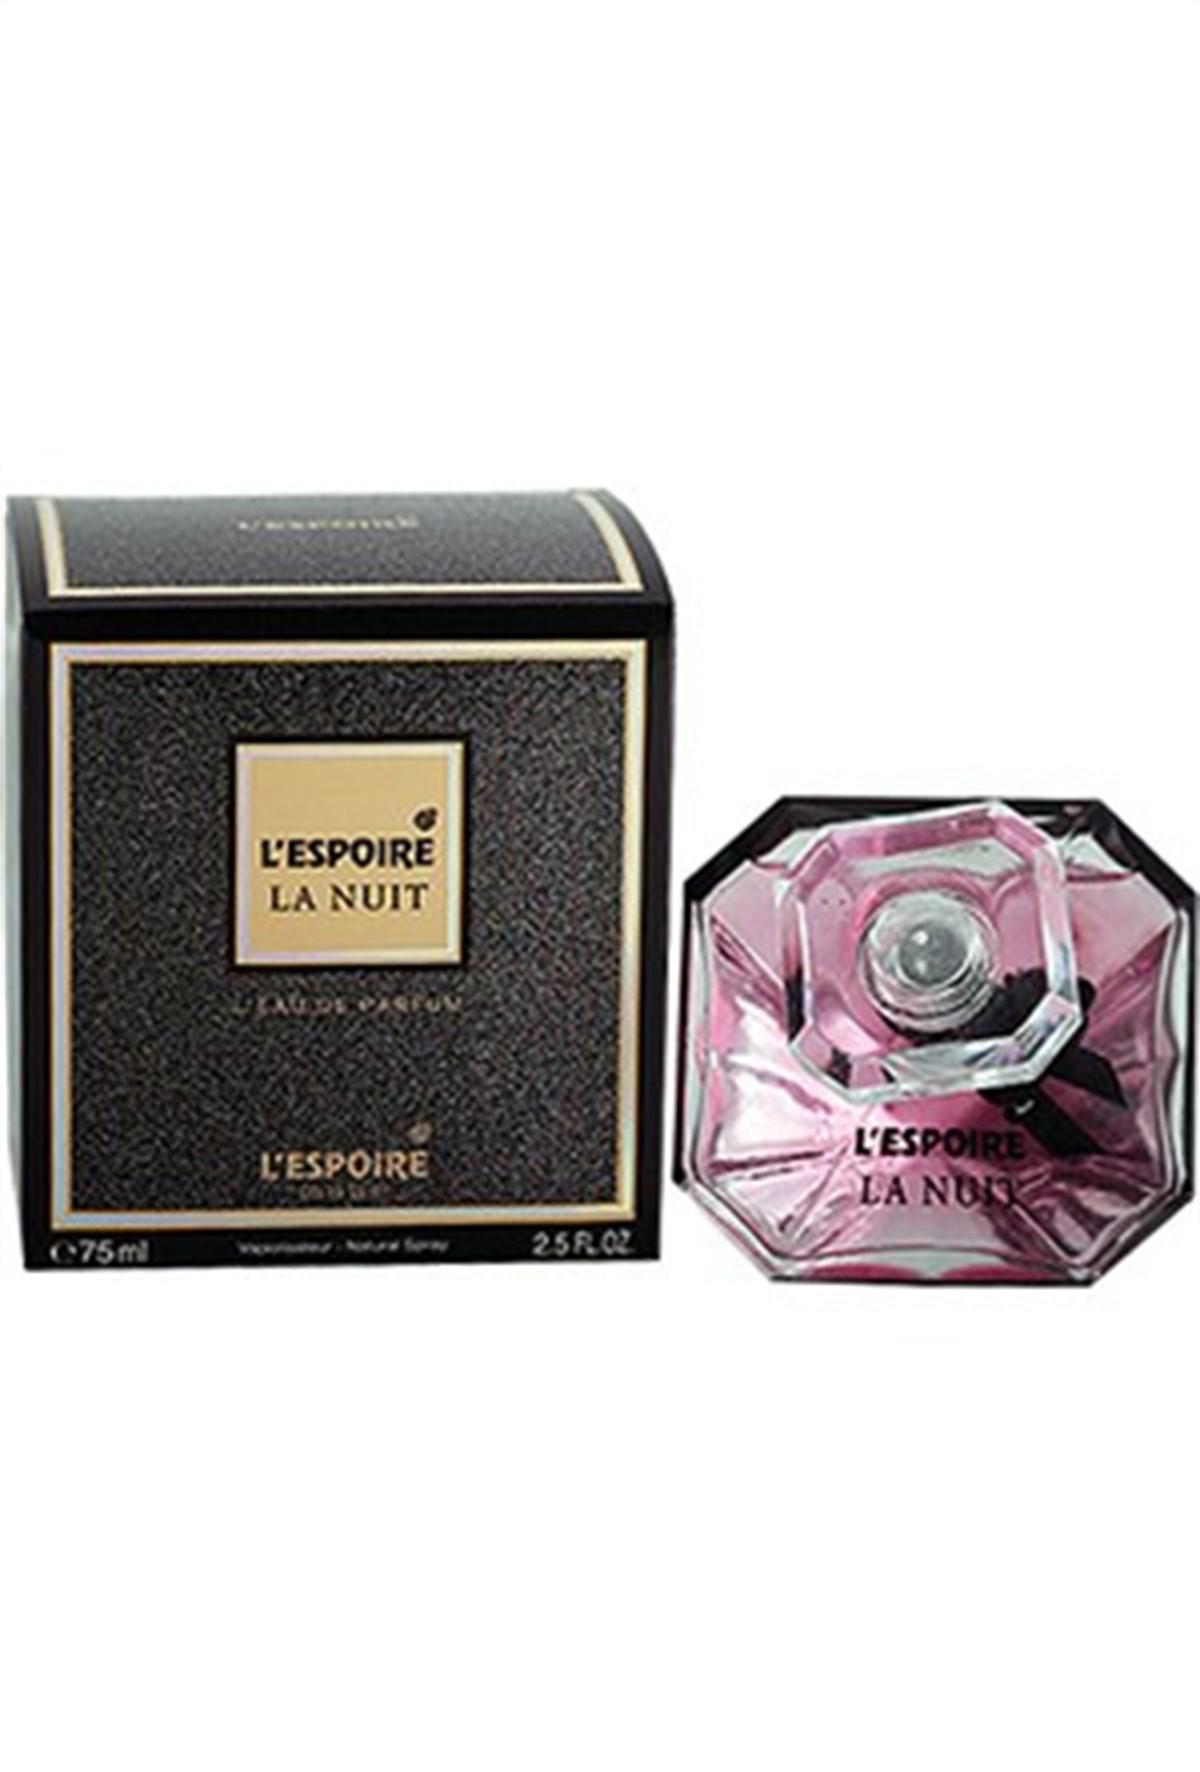 Lespoire Parfum Lespoire La Nuit EDP Kadın Parfüm 75 ml